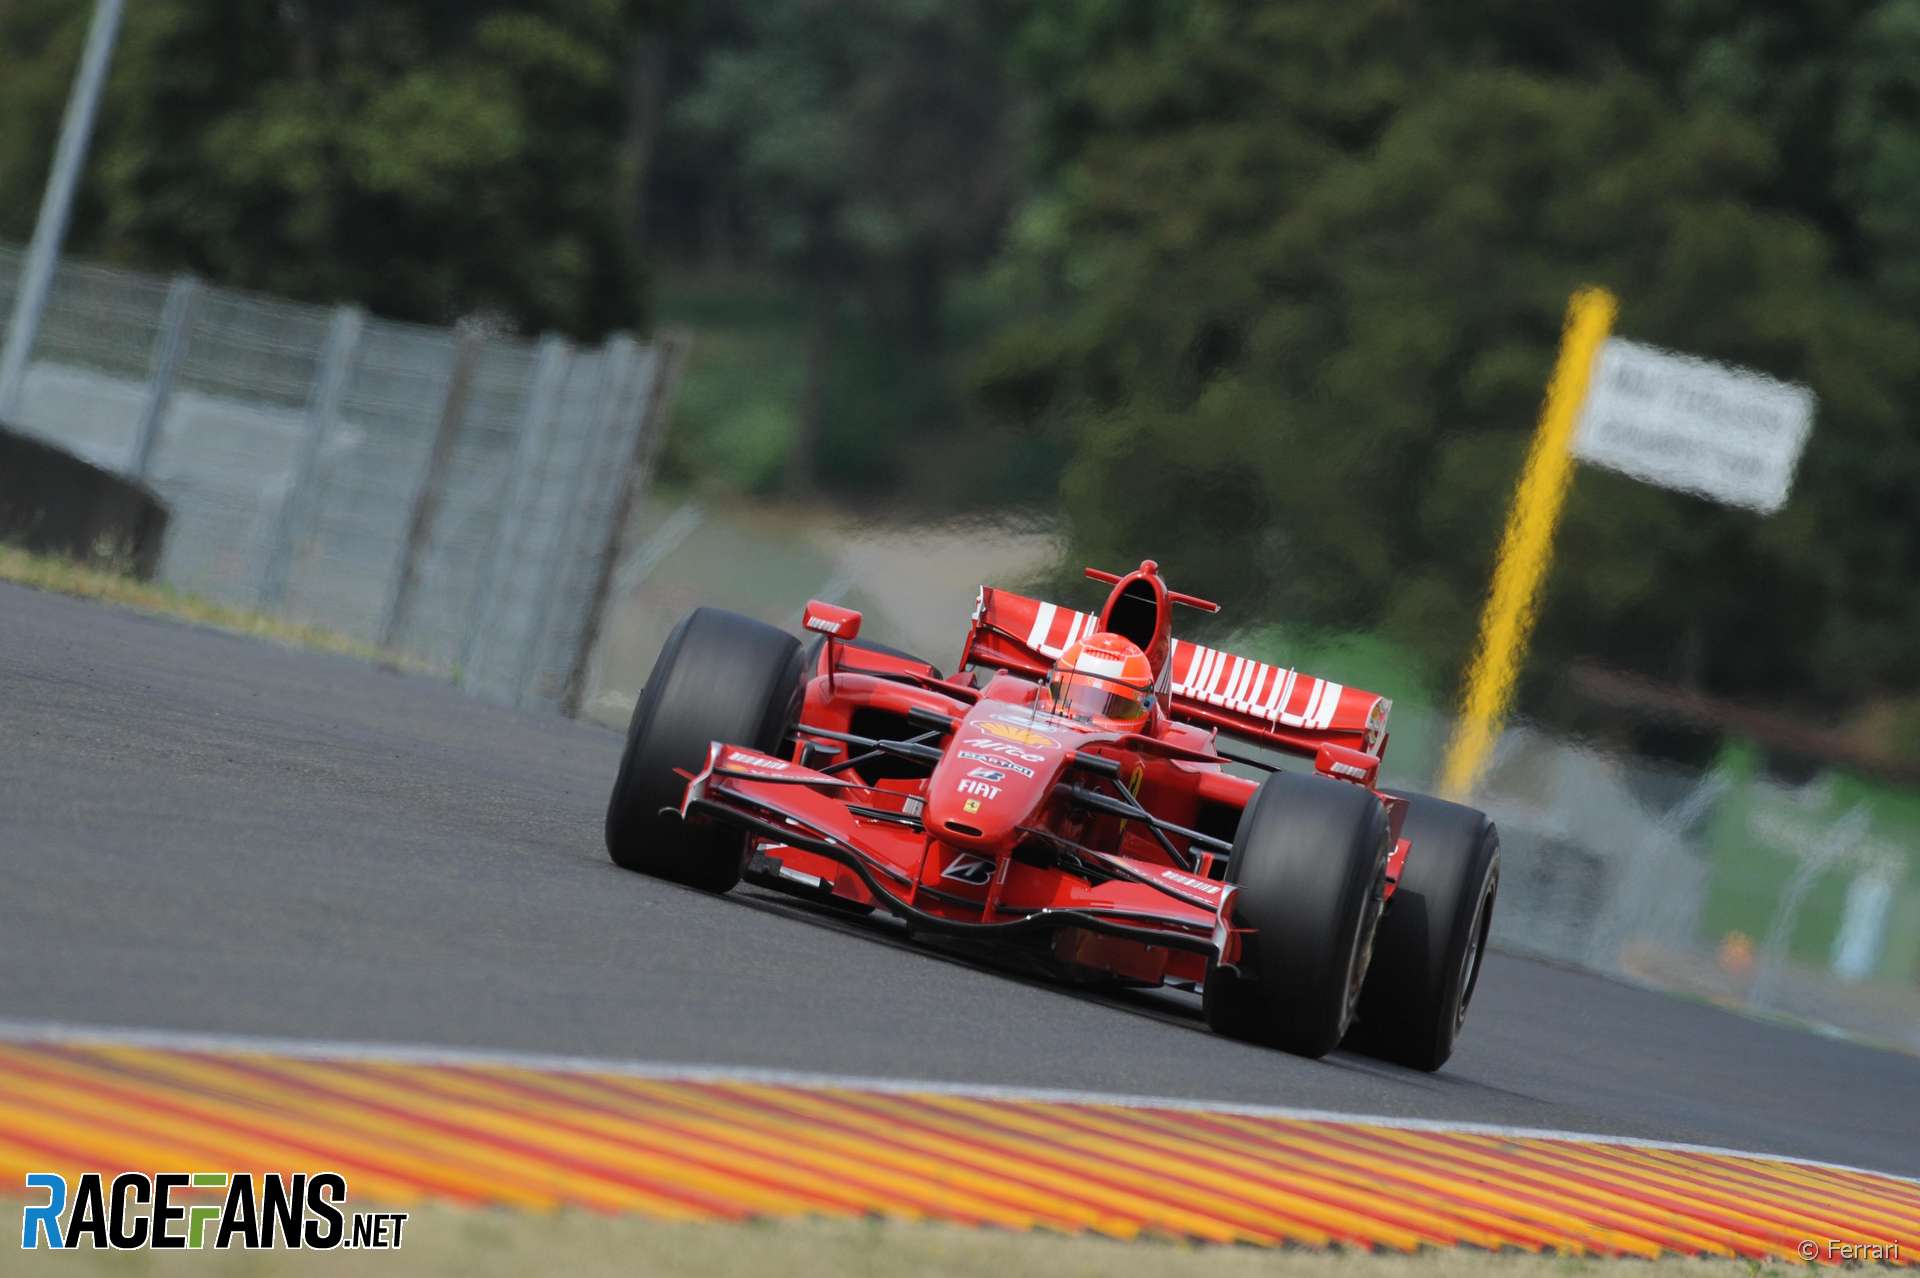 Michael Schumacher, Mugello, Ferrari, 2009